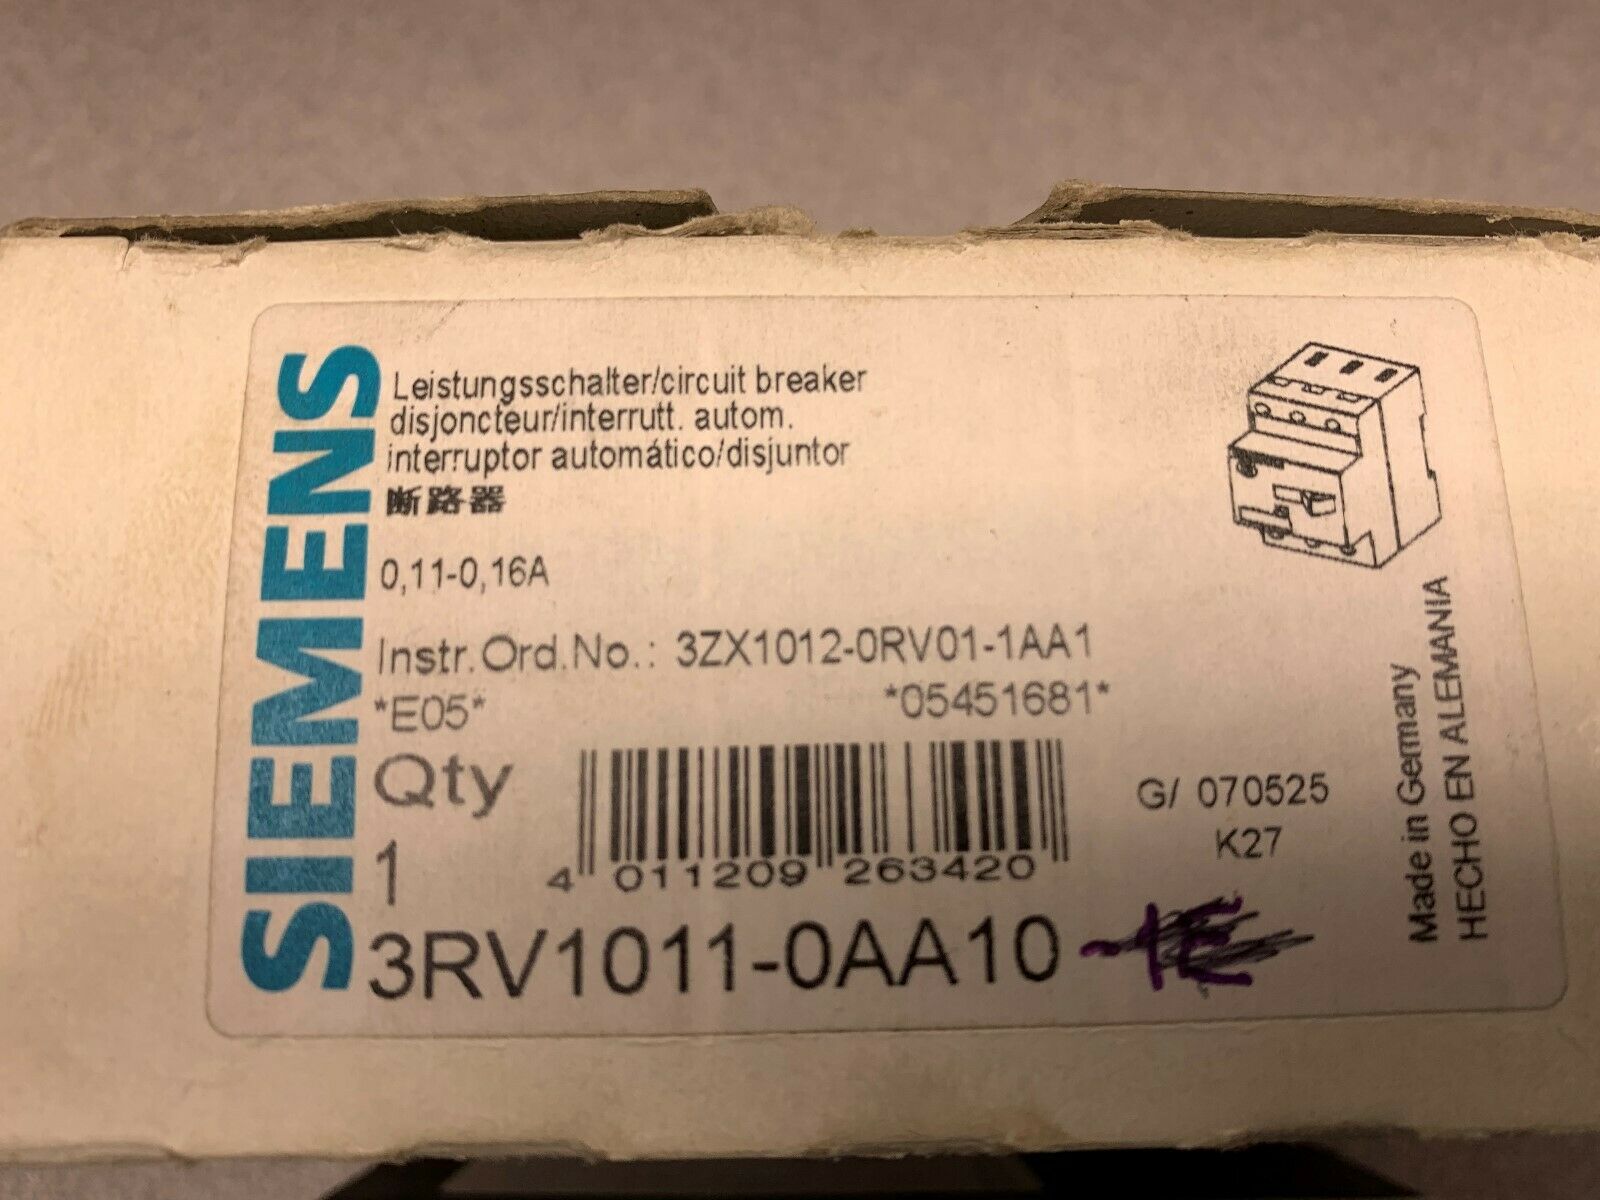 NEW IN BOX SIEMENS BREAKER 3RV1011-0AA10